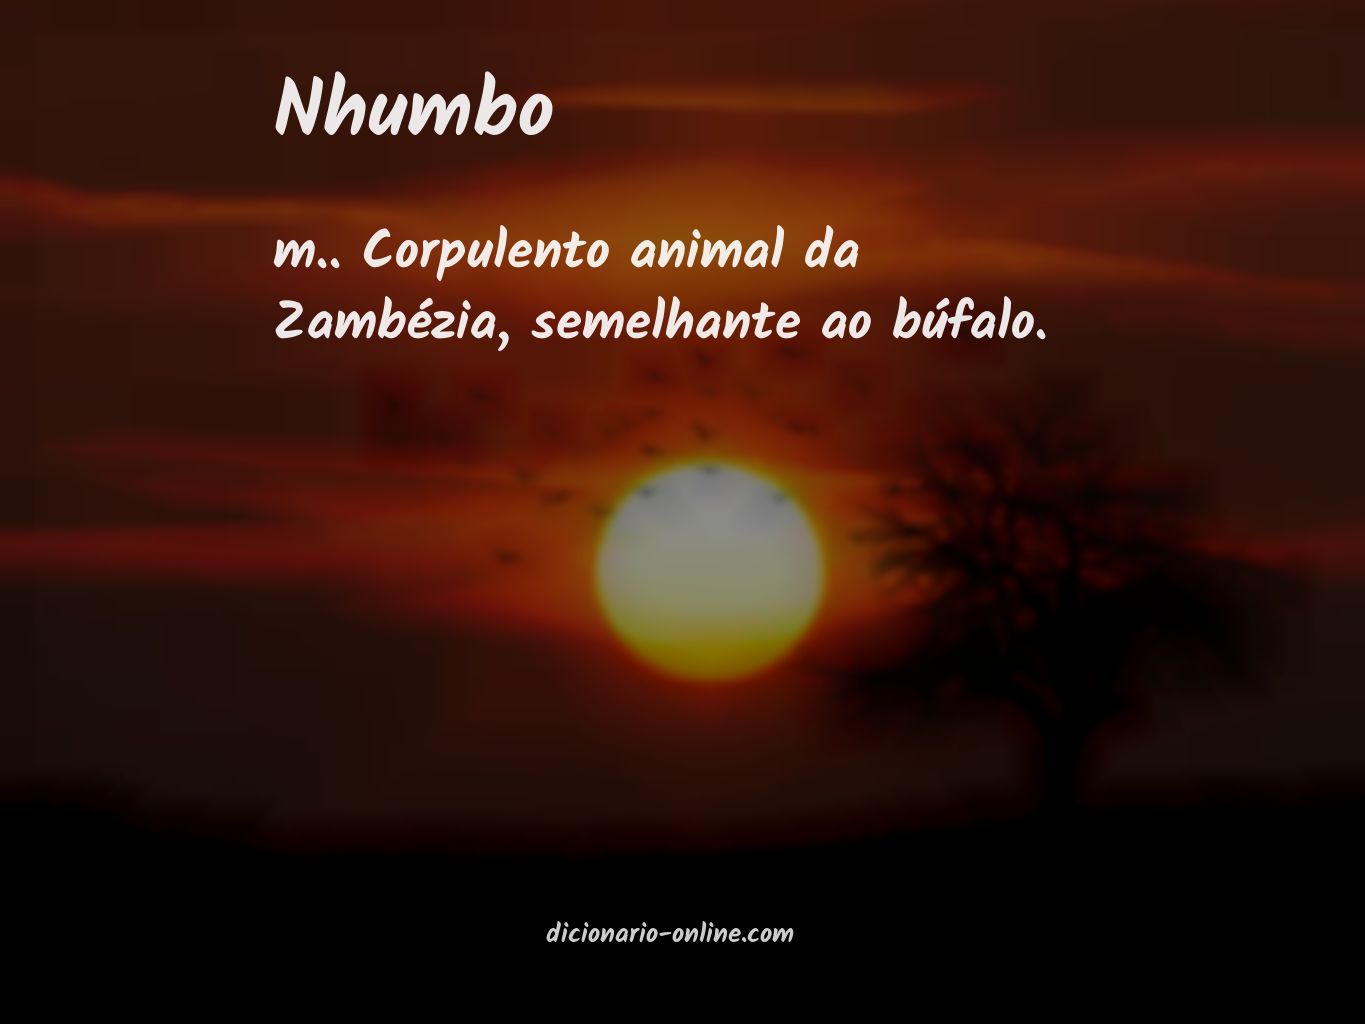 Significado de nhumbo